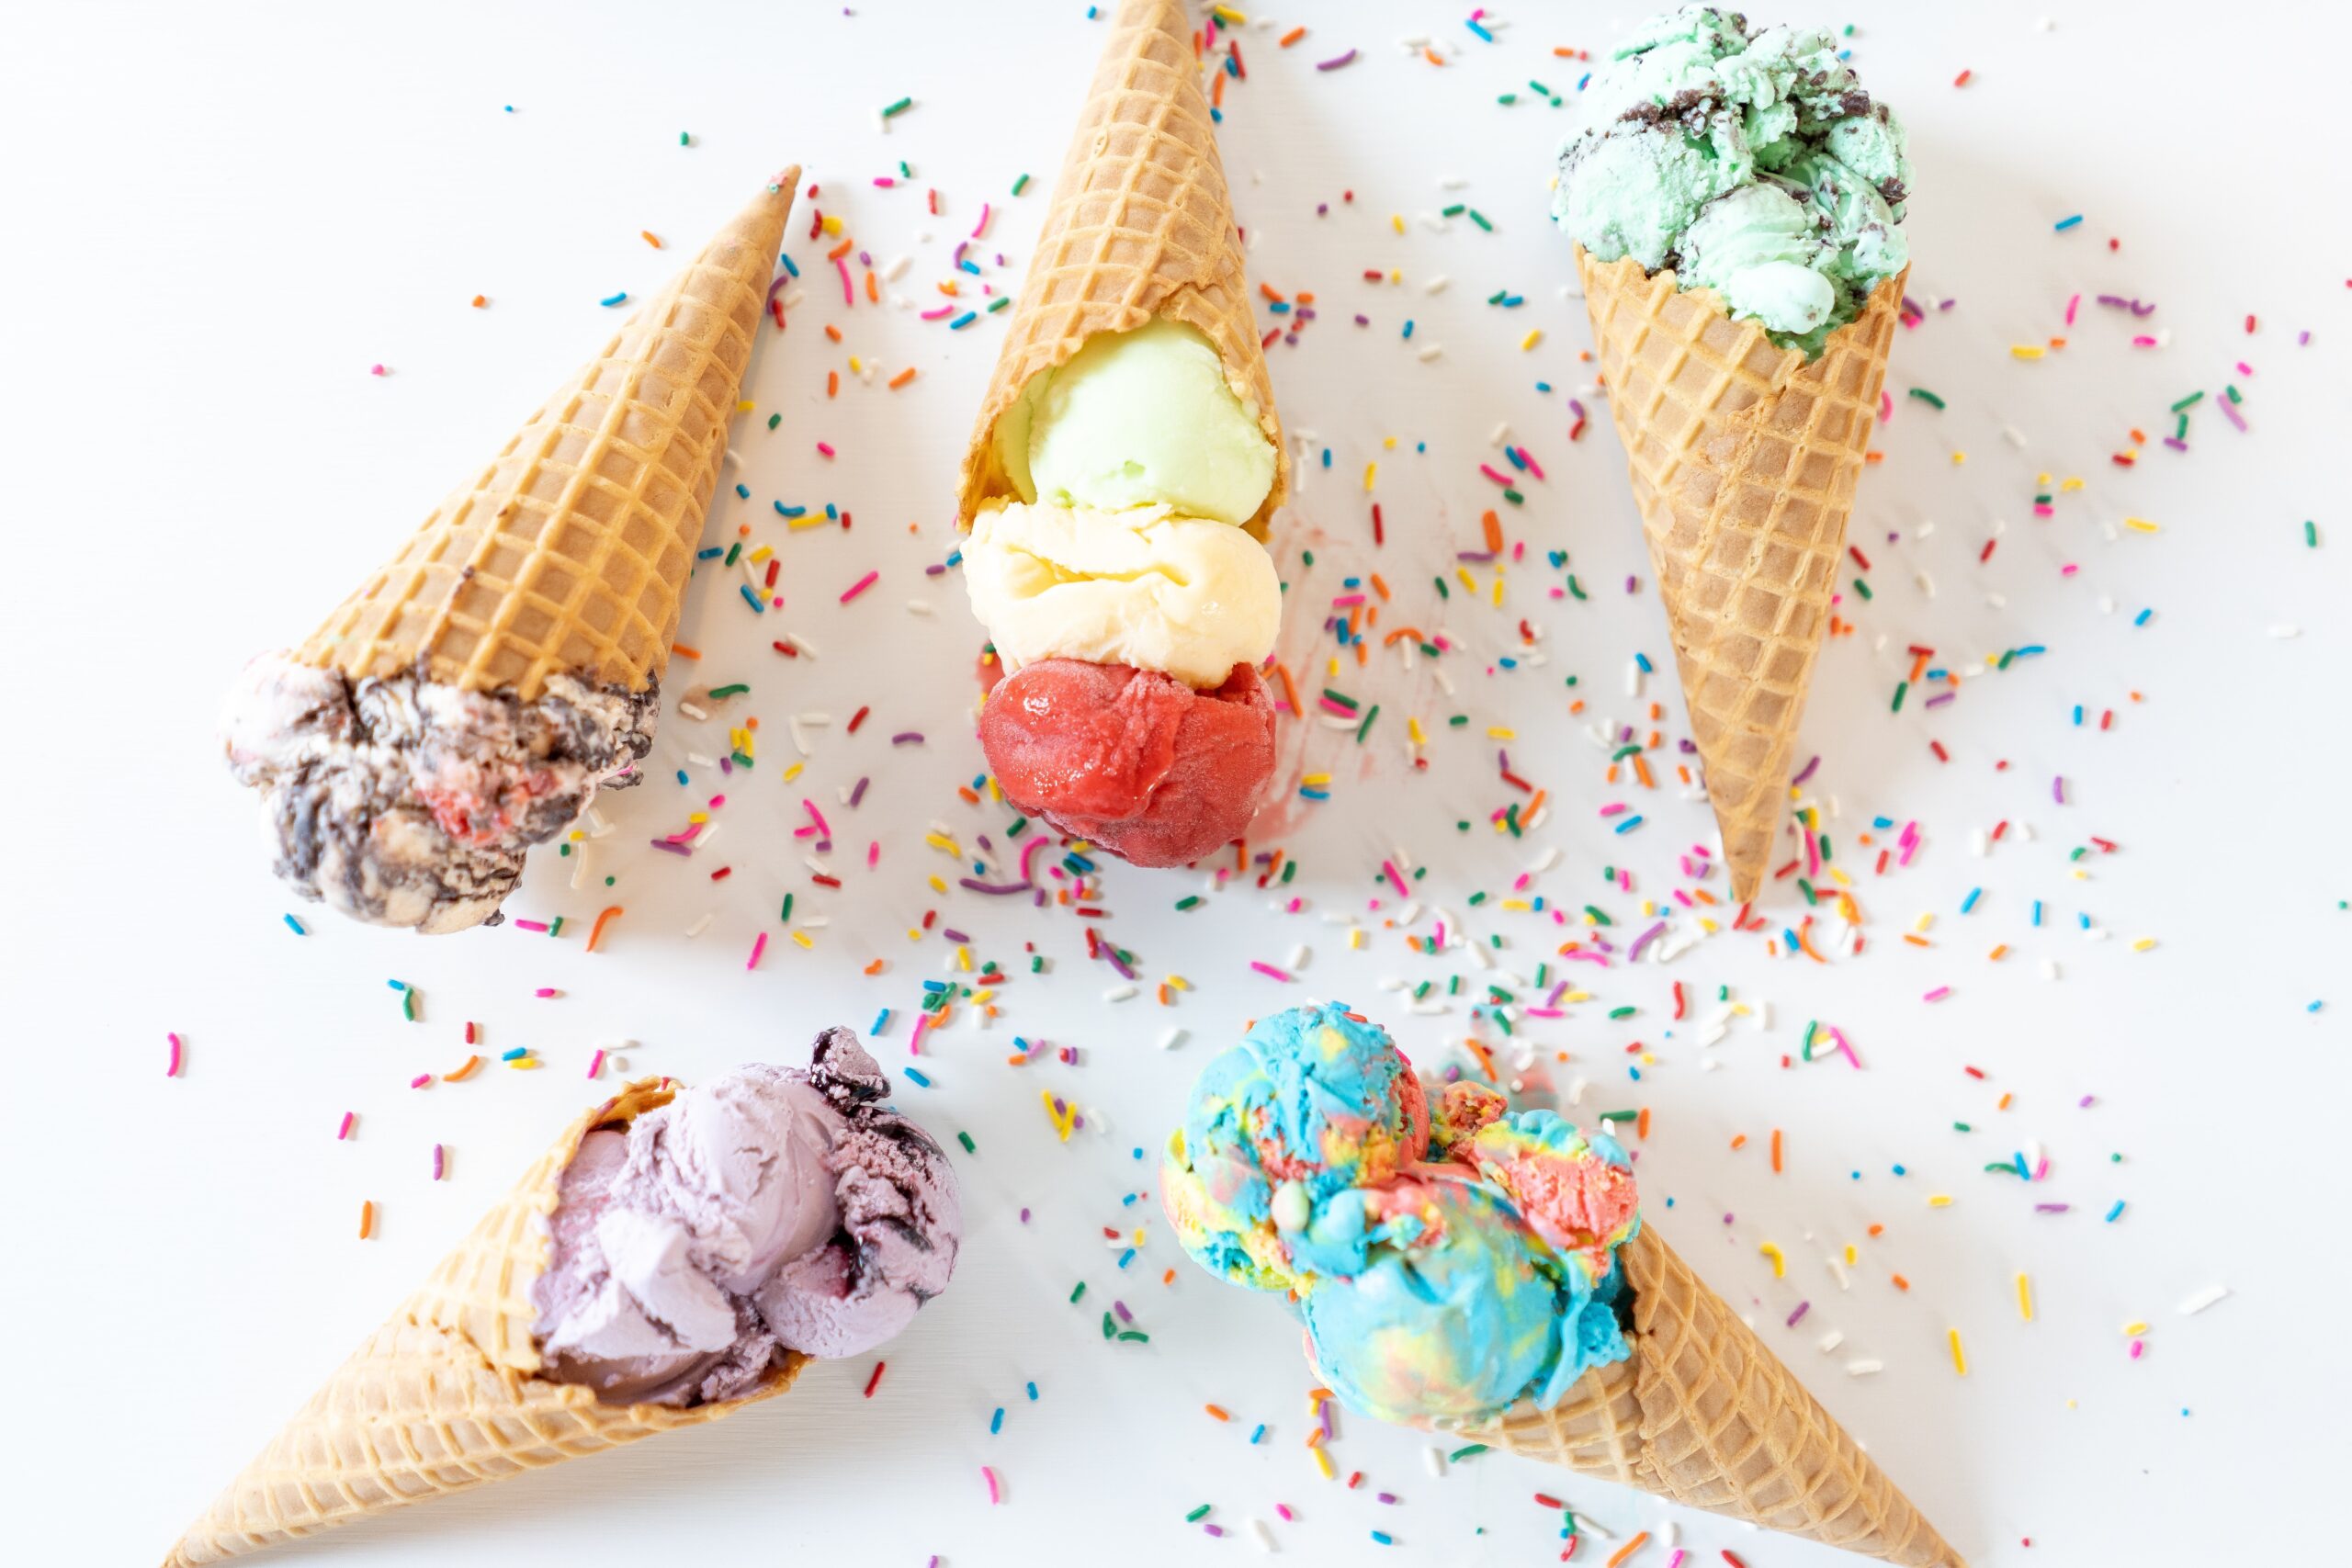 colorful ice creams in waffle cones